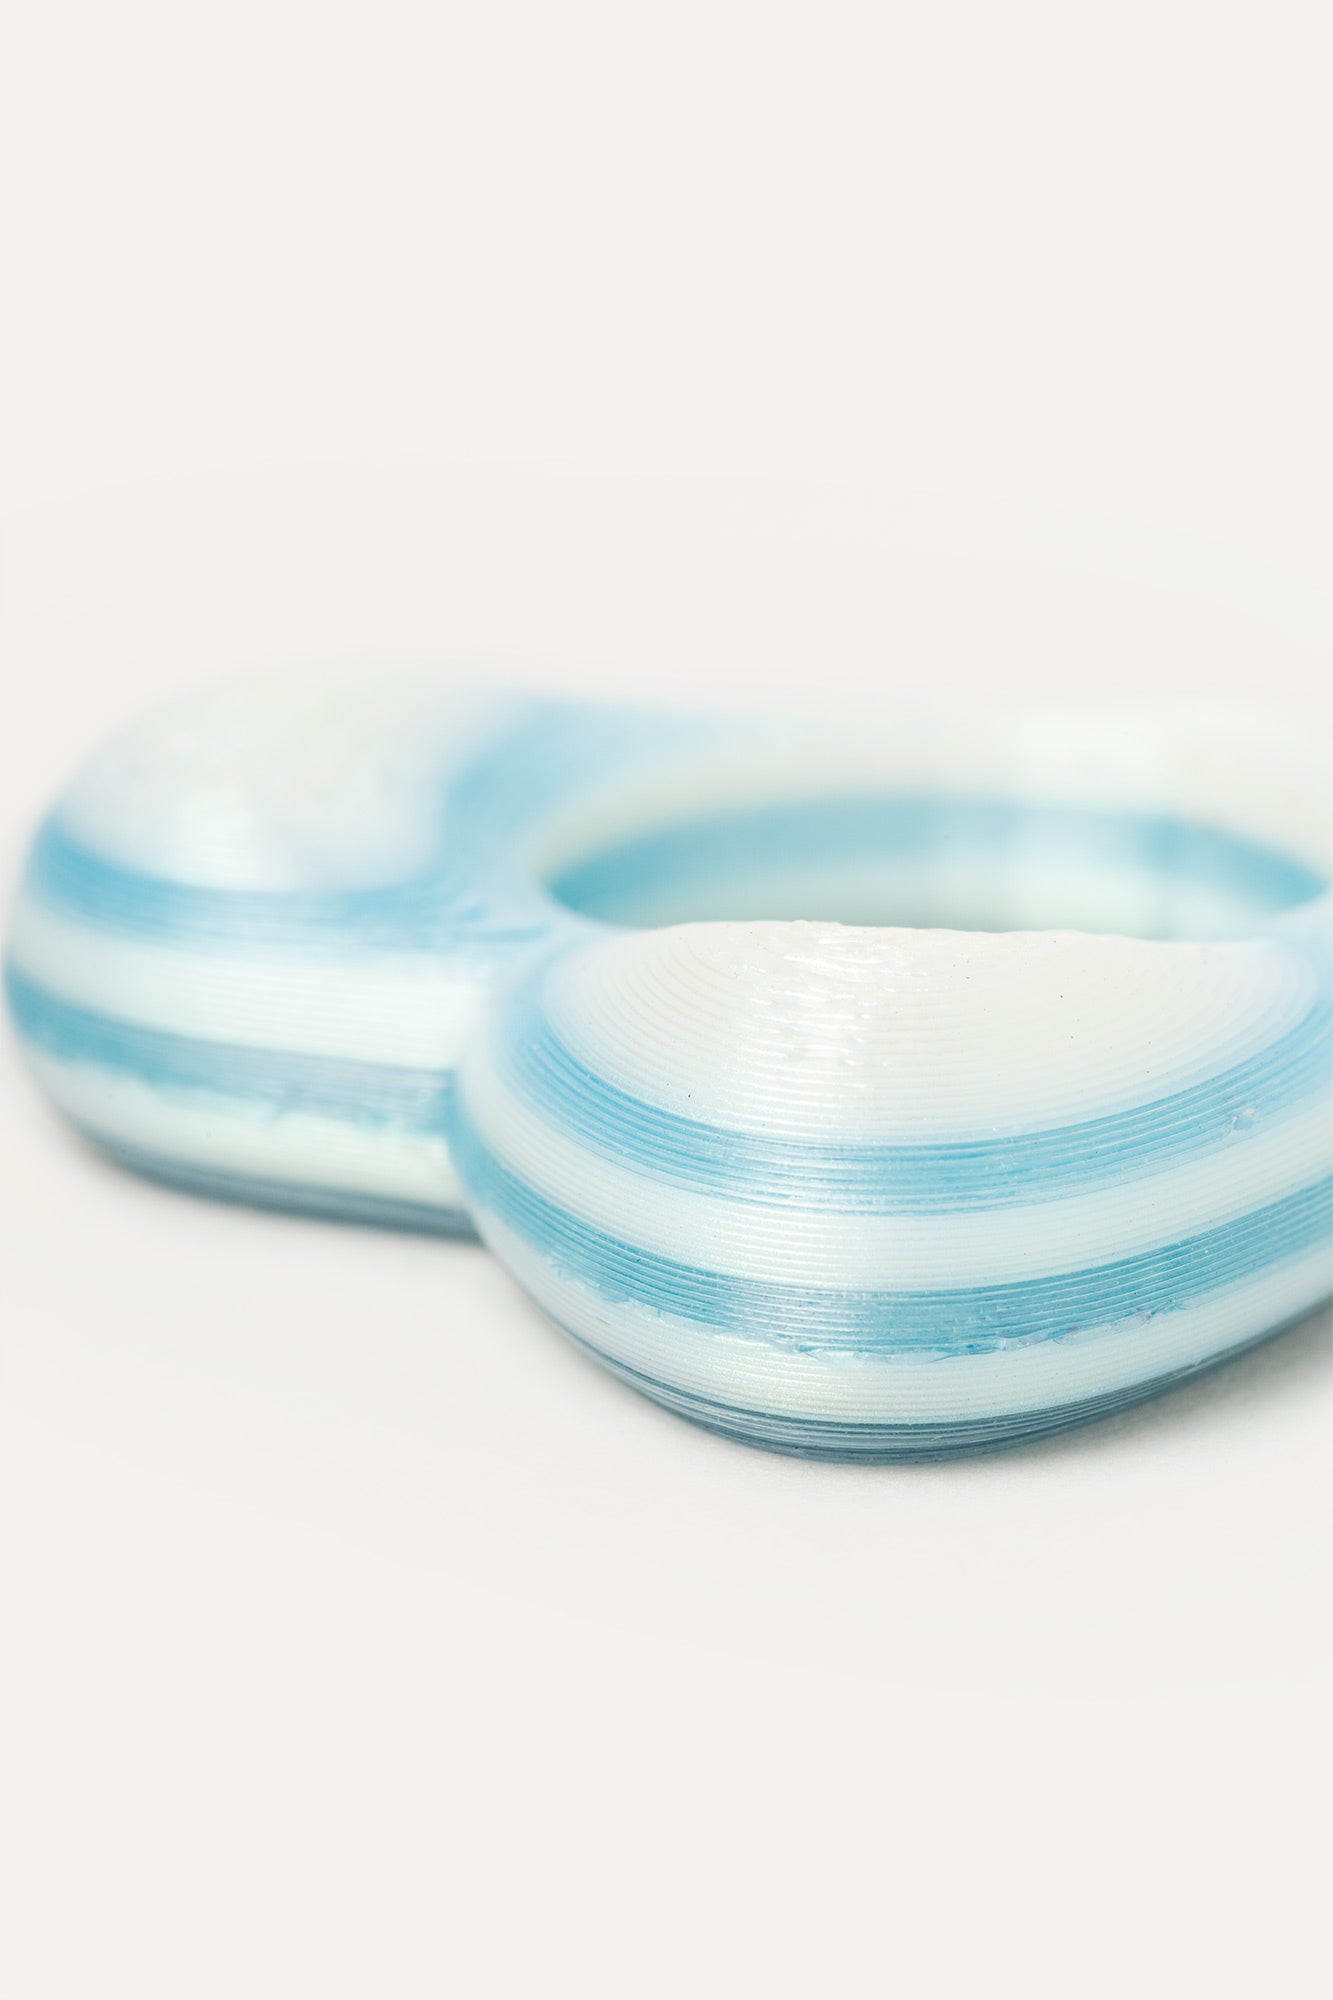 White Blue Heart Vegan Ring 3D